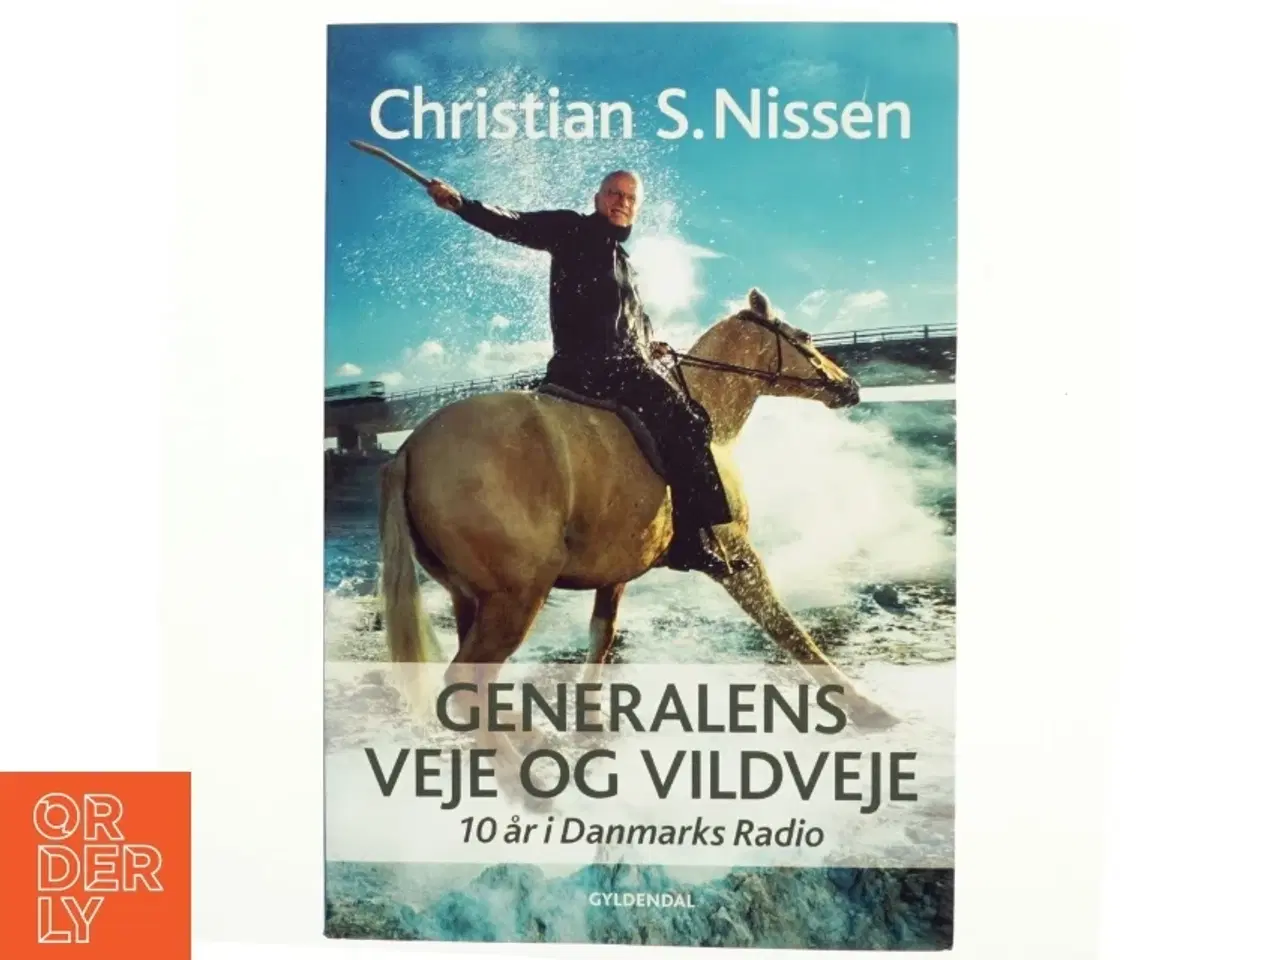 Billede 1 - Generalens veje og vildveje - 10 år i Danmarks Radio af Christian S. Nissen (Bog)